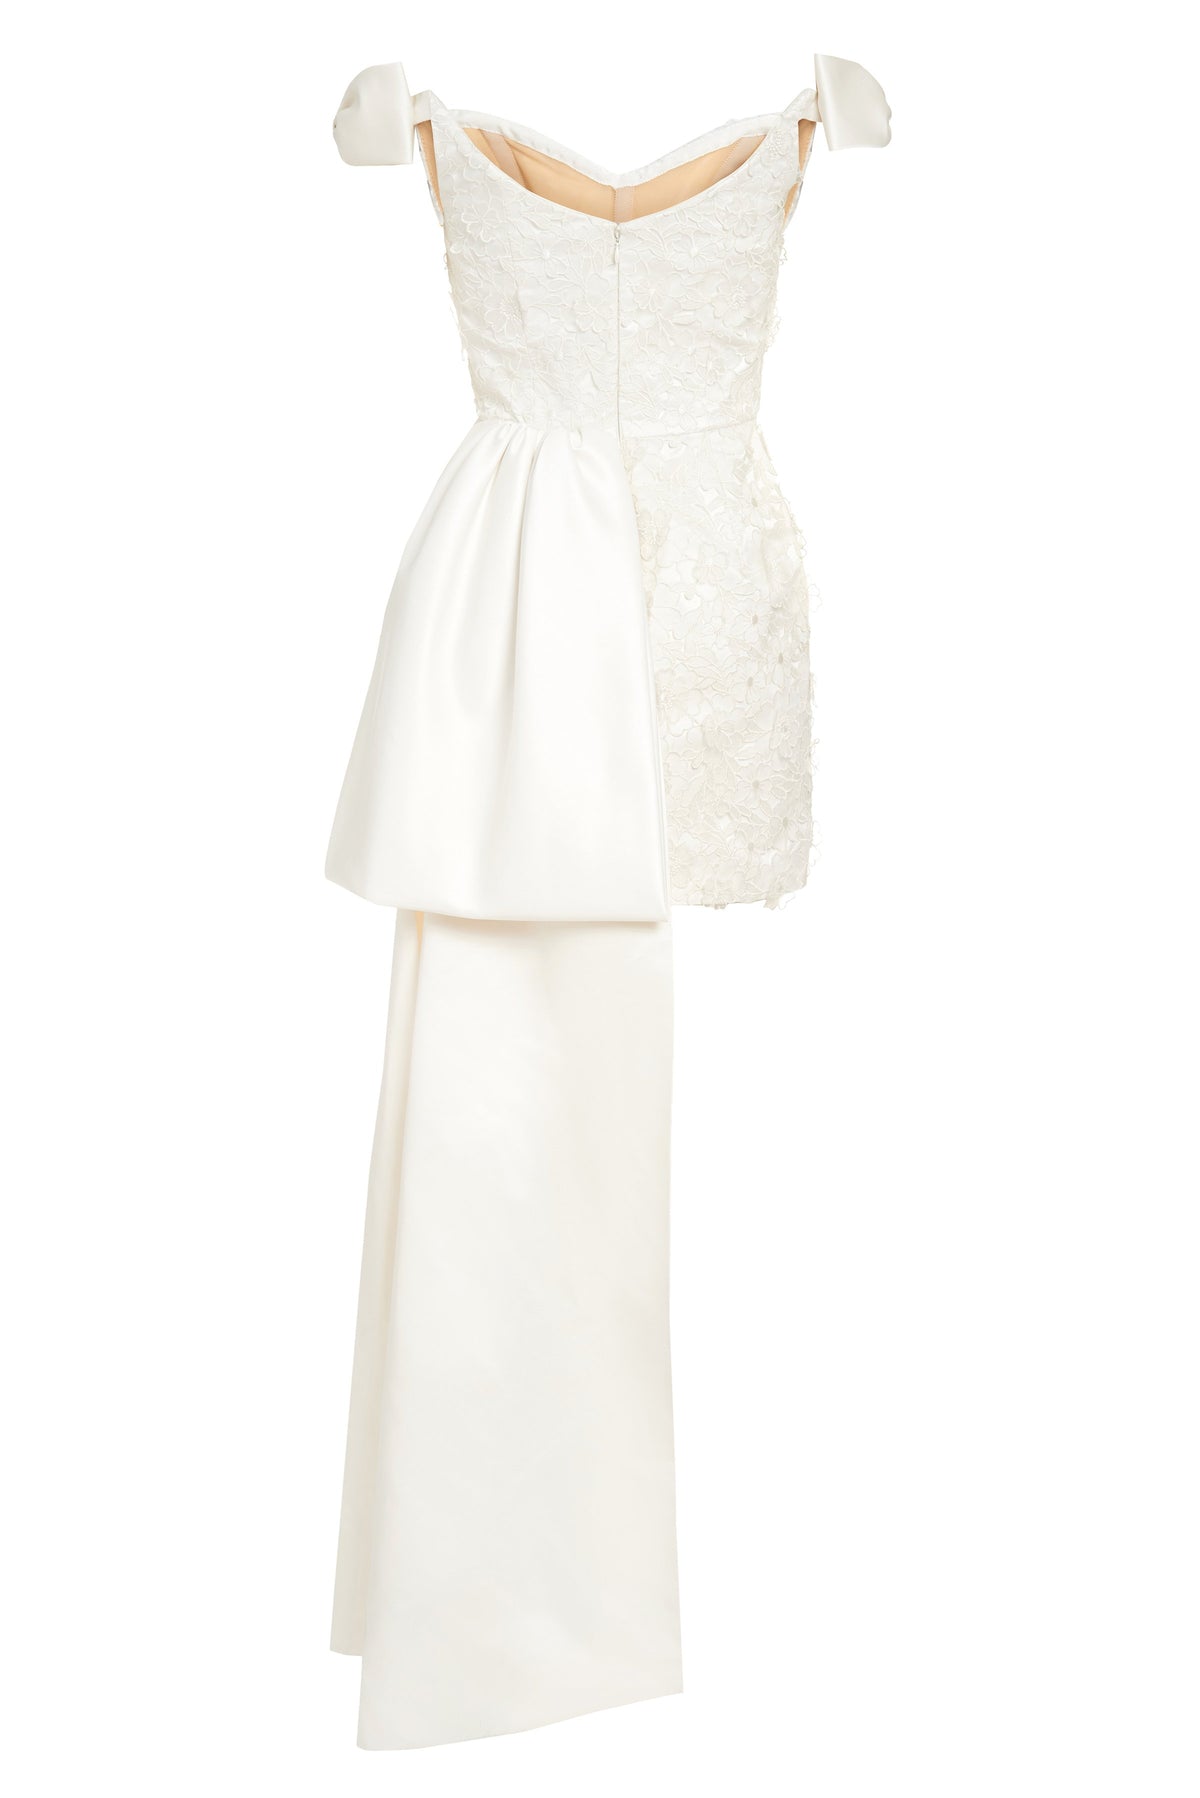 Bowen Bow Shoulder White Floral Applique Mini Dress